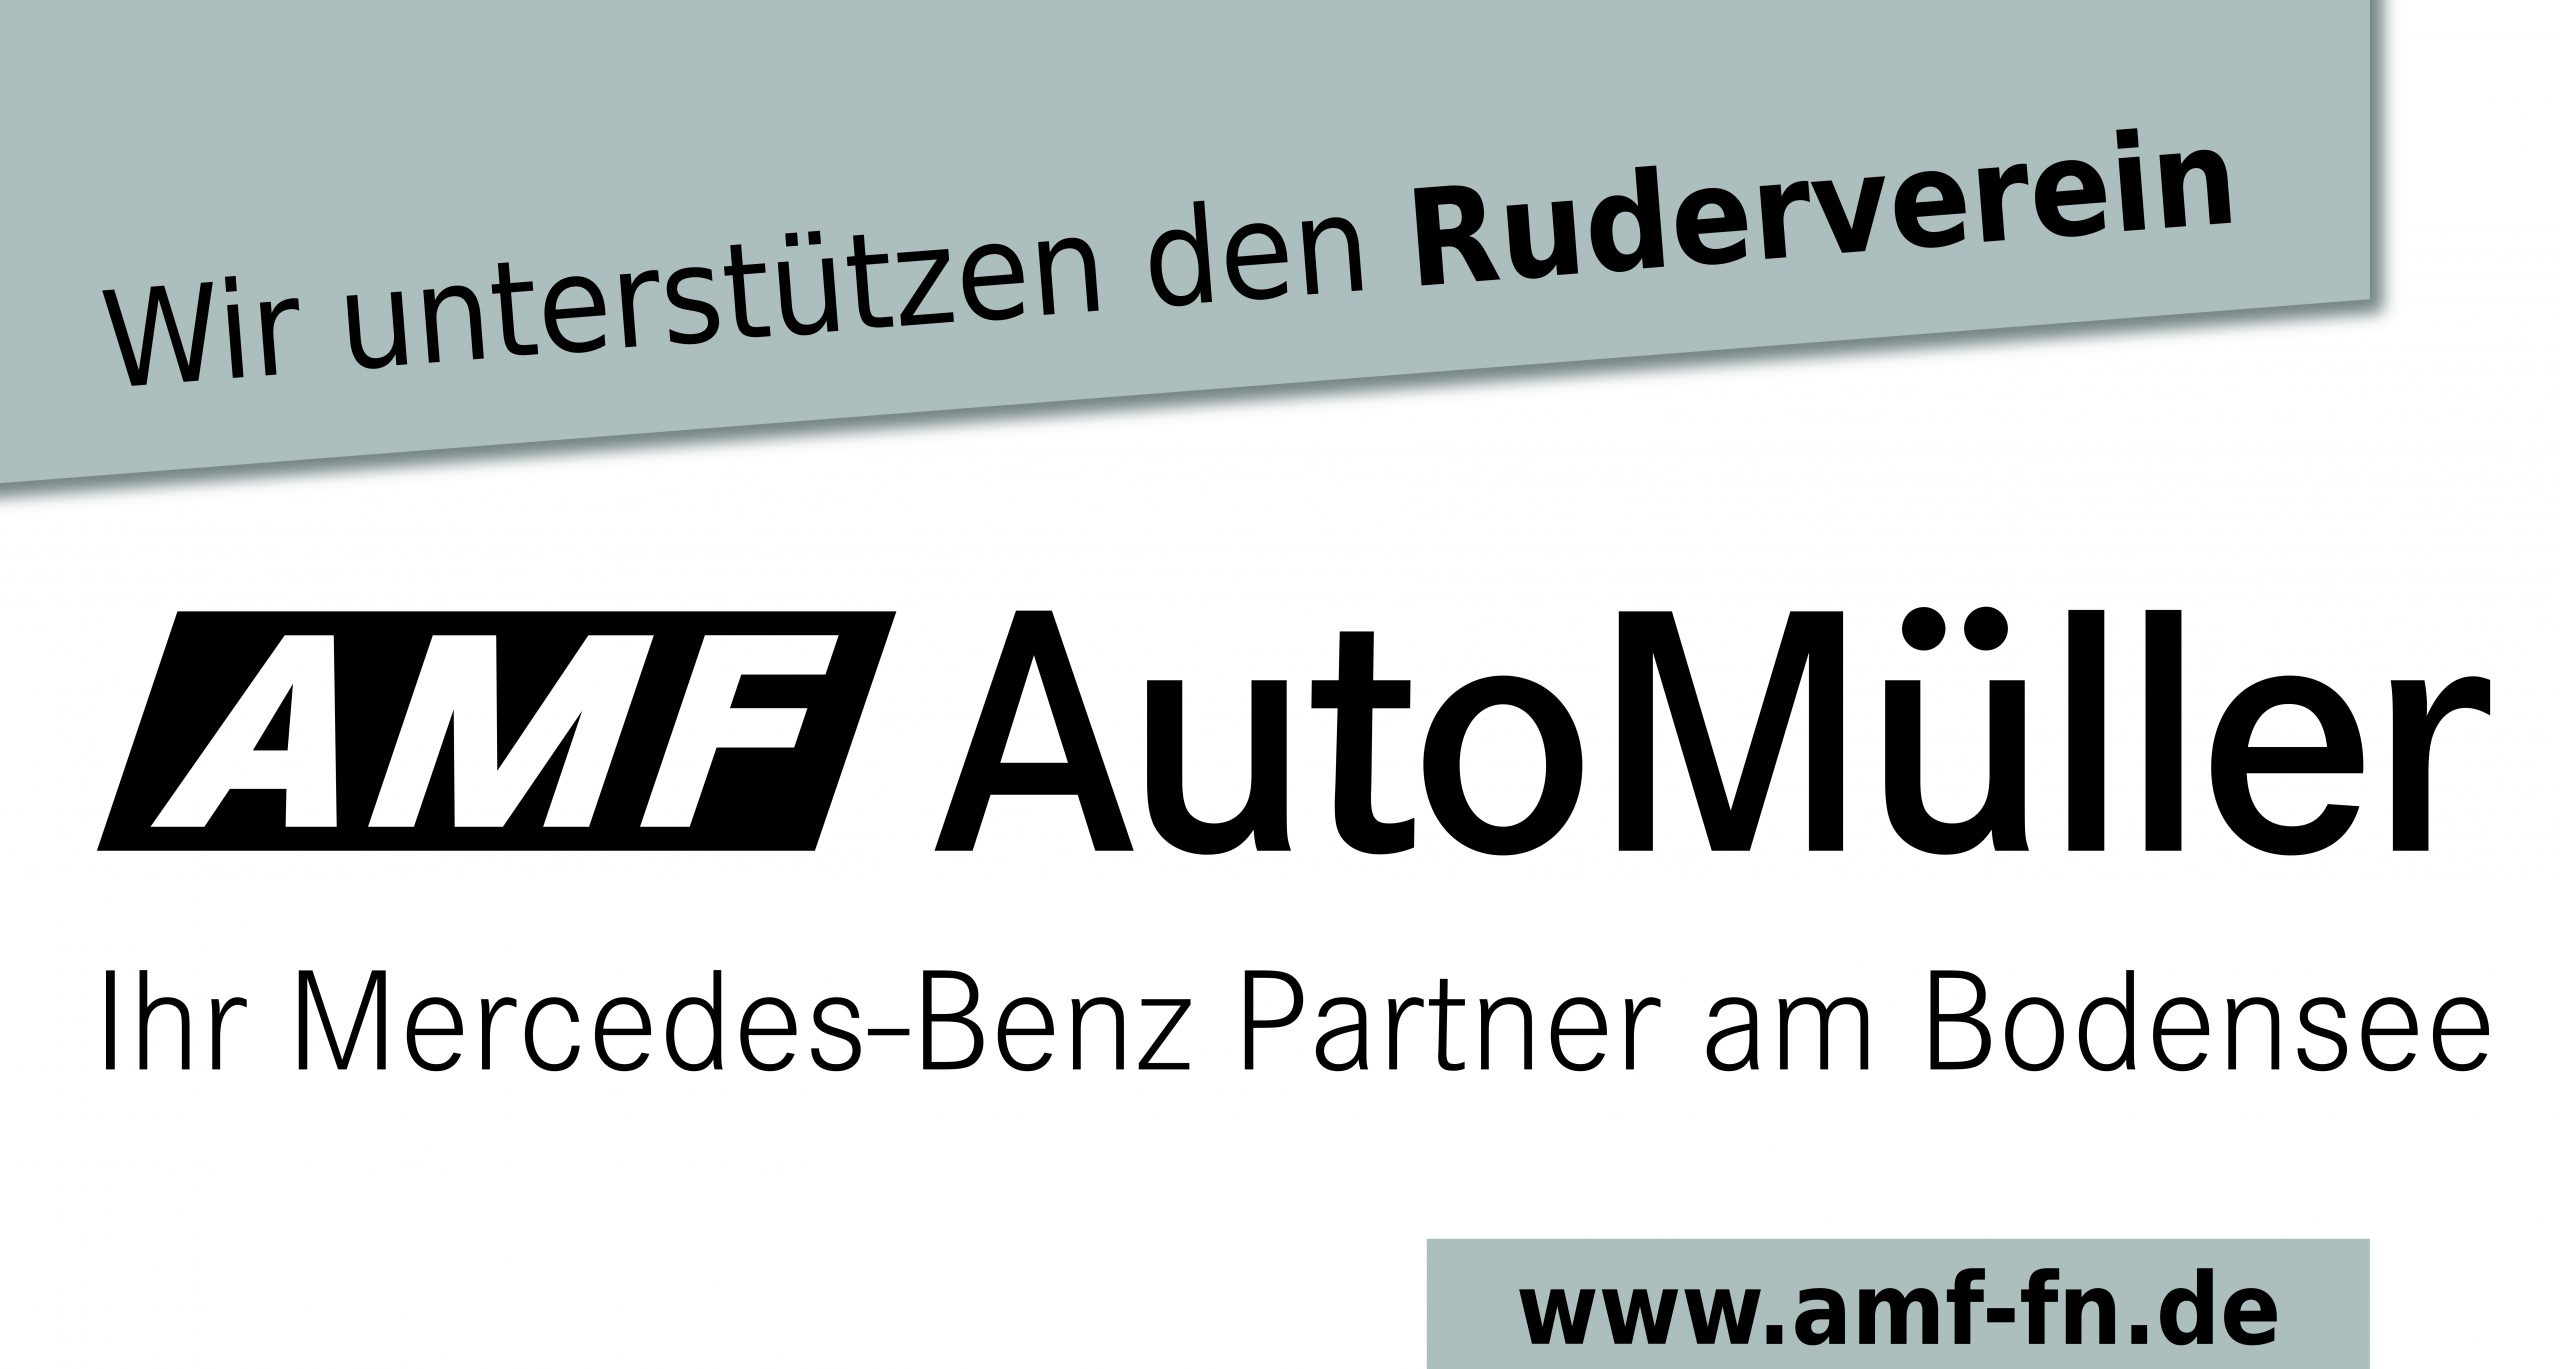 Partner des Rudervereins - AMF AutoMüller